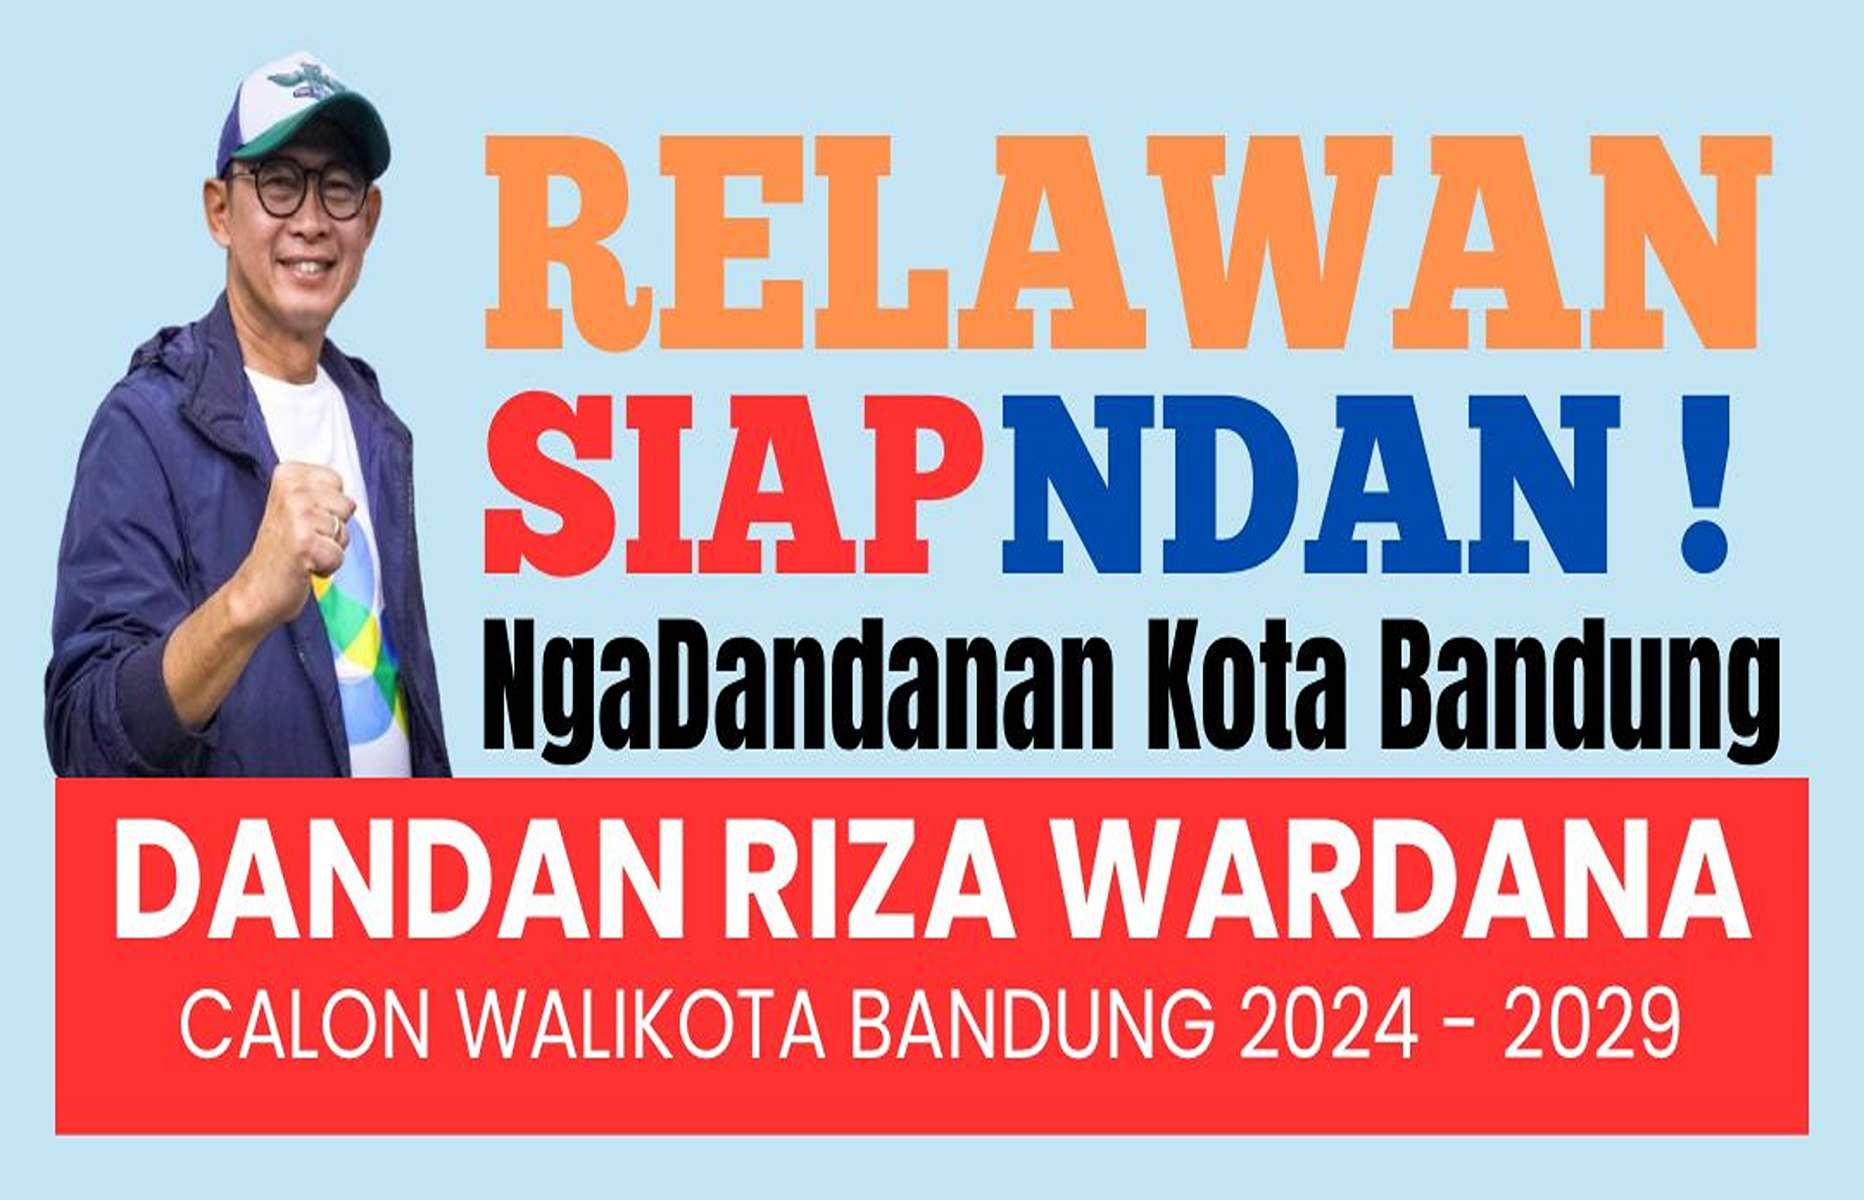 Jelang Pilkada Serentak 2024, Para Senior Kader Demokrat Kota Bandung Dirikan Relawan Siap Ndan